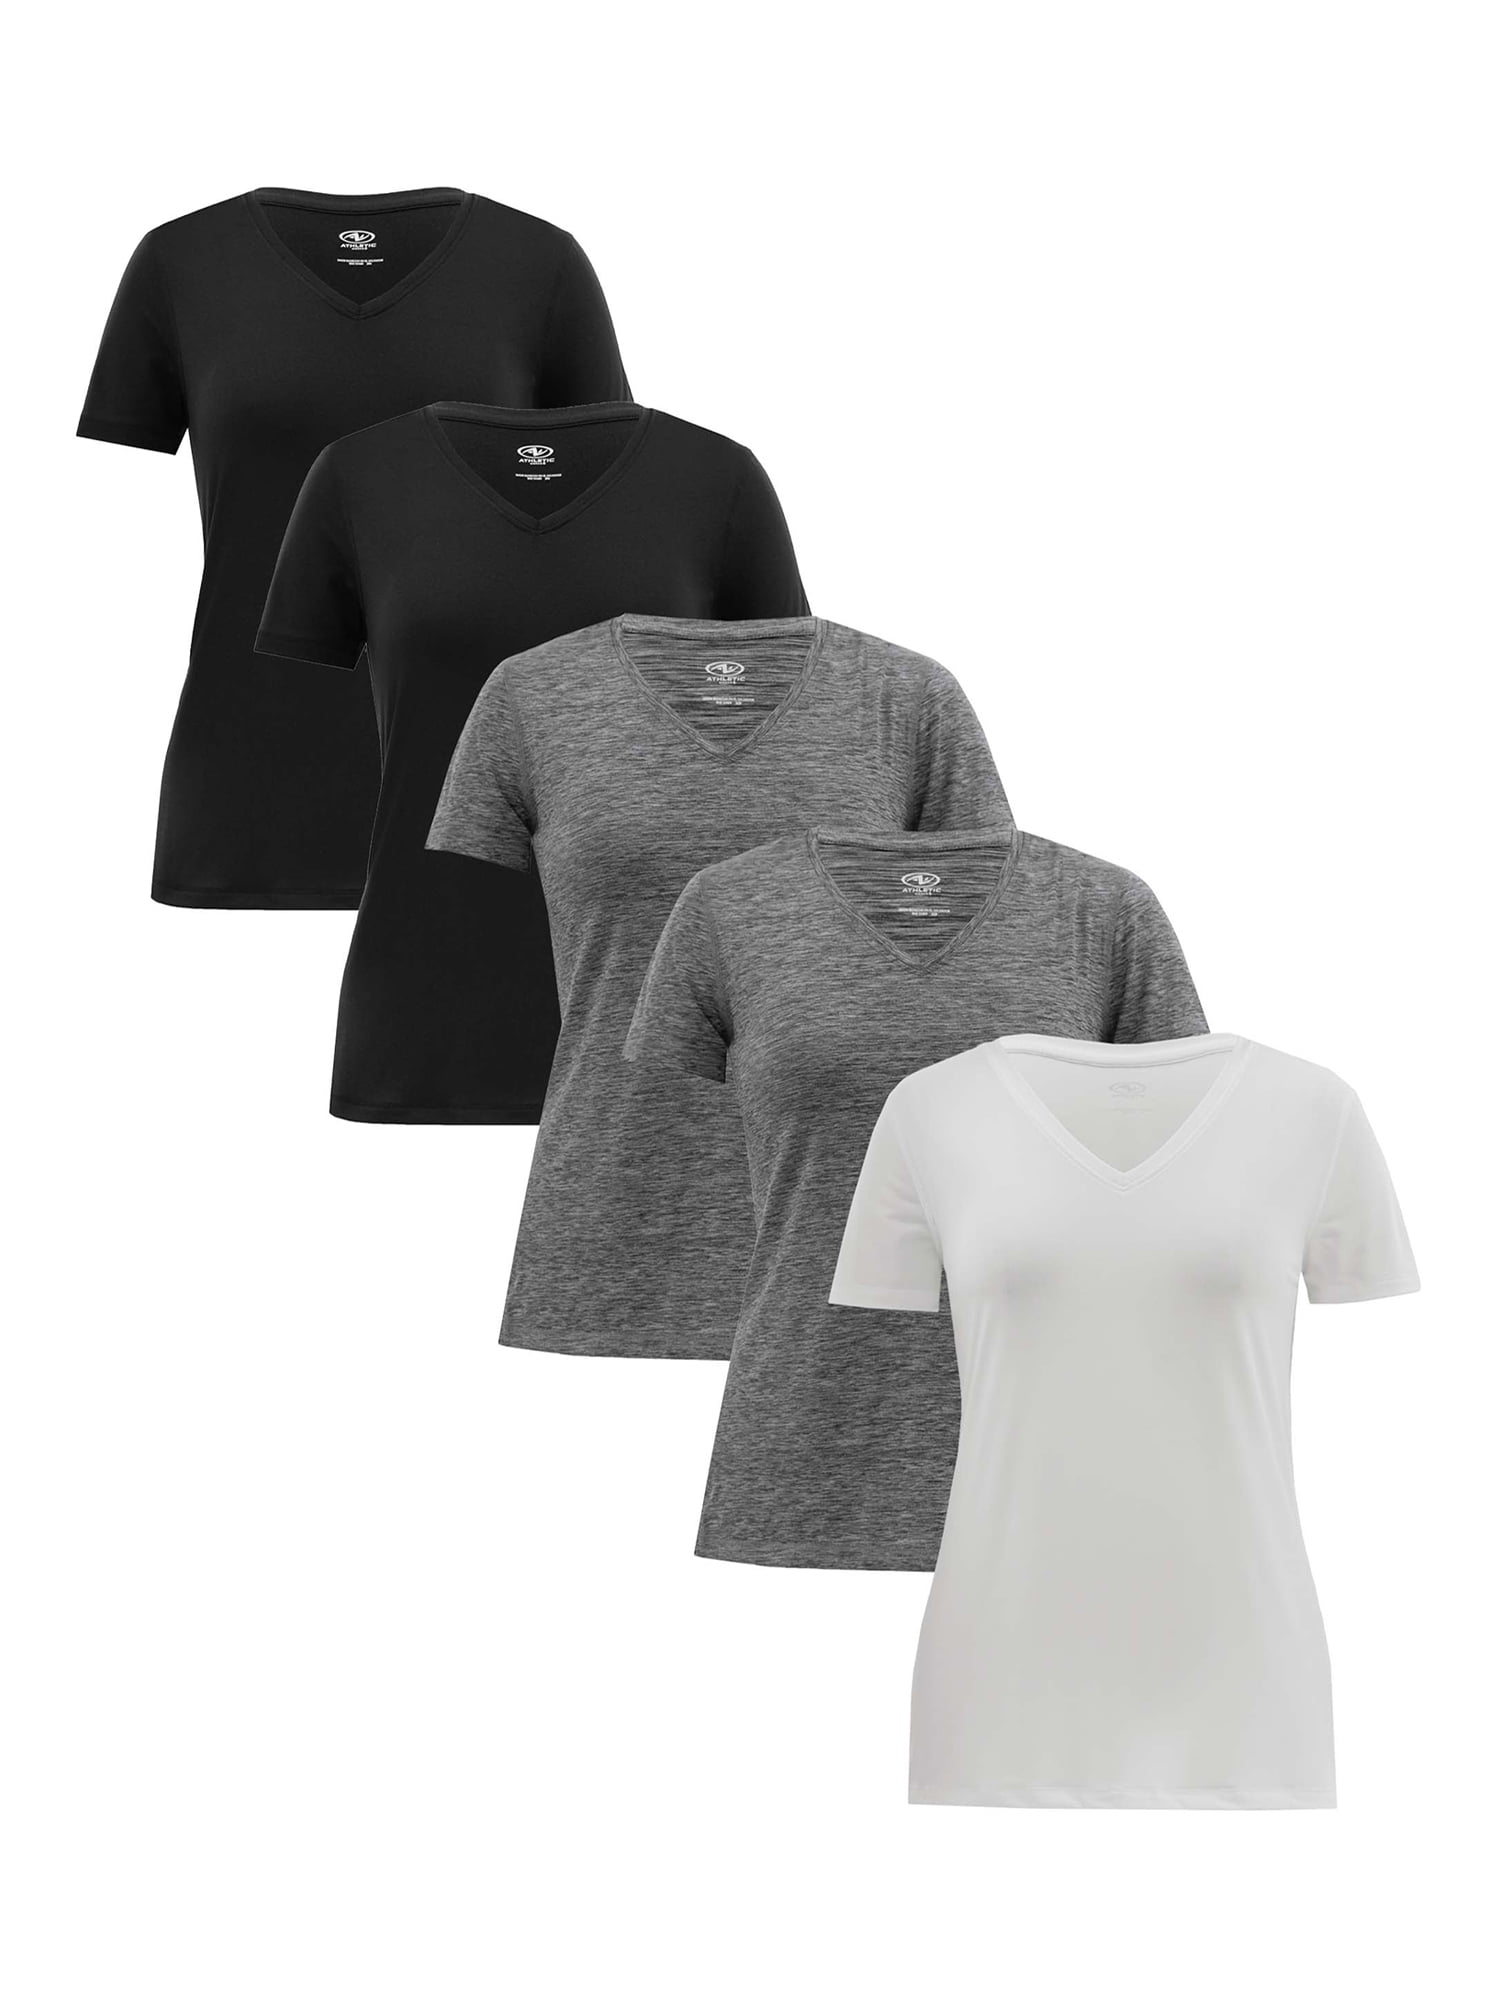 moronic Dalset kærlighed Athletic Works Women's Core Active Short Sleeve V-Neck T-Shirt, 5-Pack -  Walmart.com